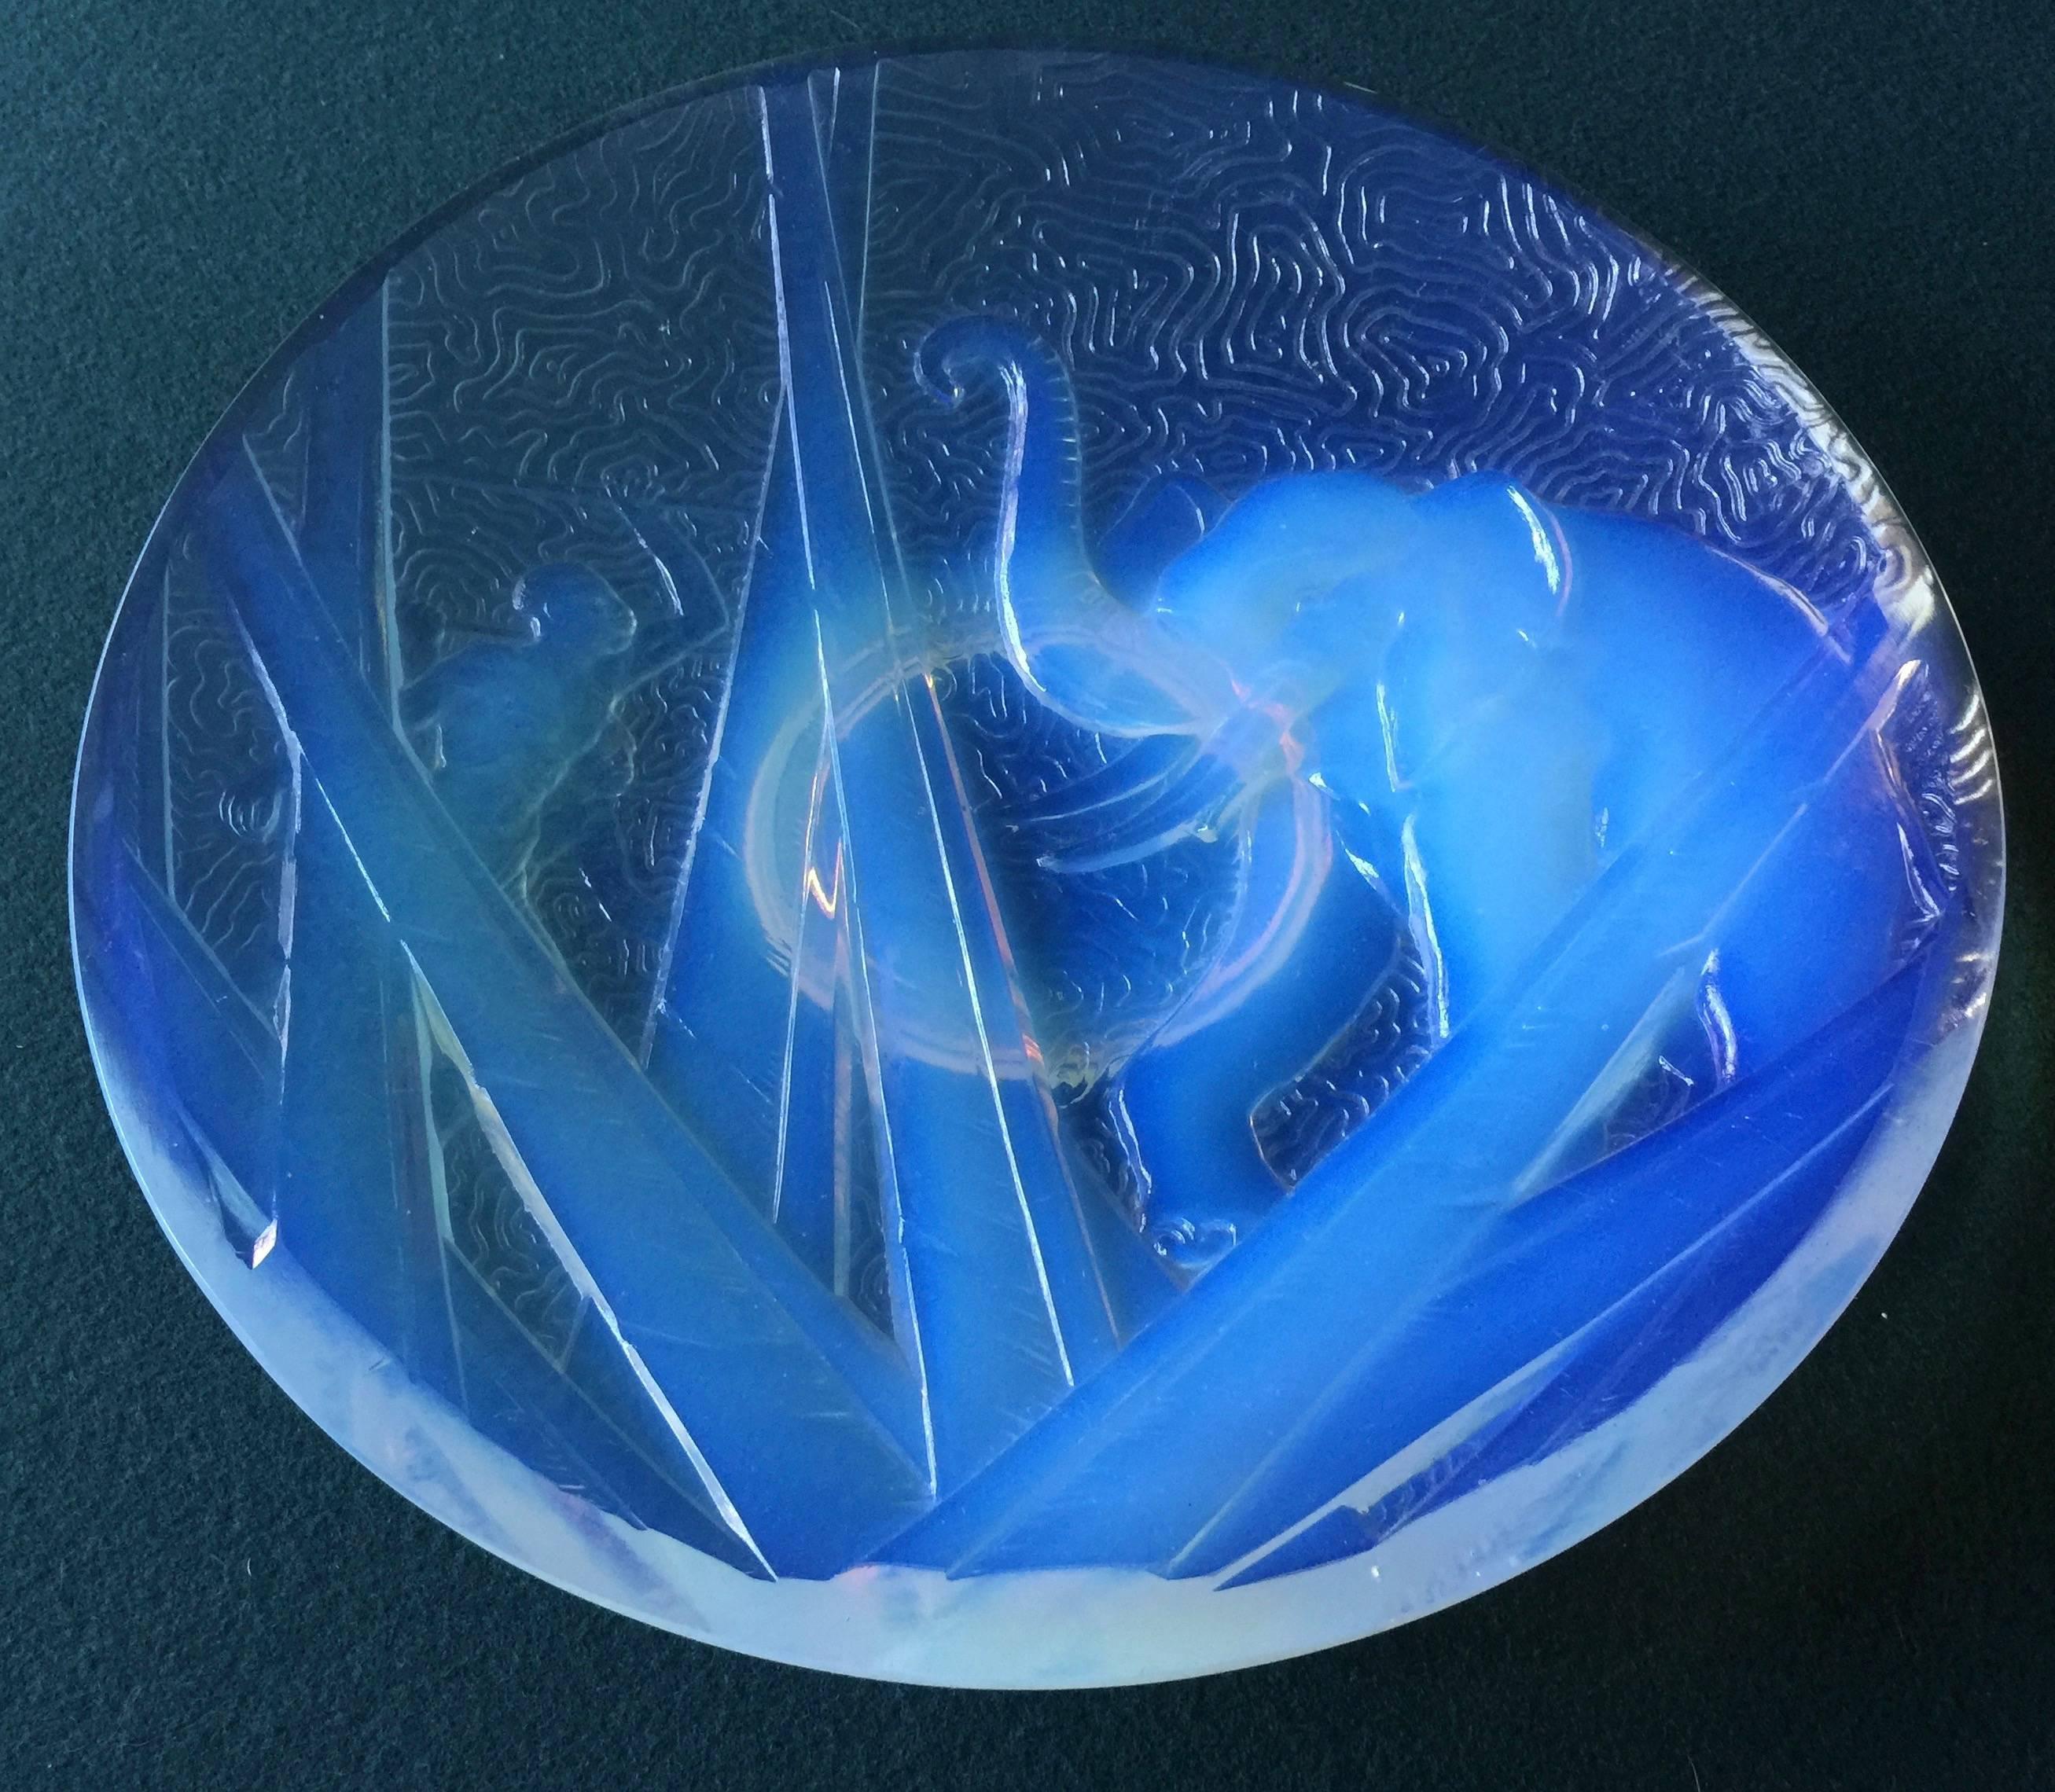 Dieser atemberaubende und äußerst seltene Art-Déco-Präsentationsteller aus opalisierendem Glas aus den 1930er Jahren wurde von Müller Freres in Luneville, Frankreich, hergestellt. Ein wunderschönes afrikanisches Thema spiegelt die Designrichtung und